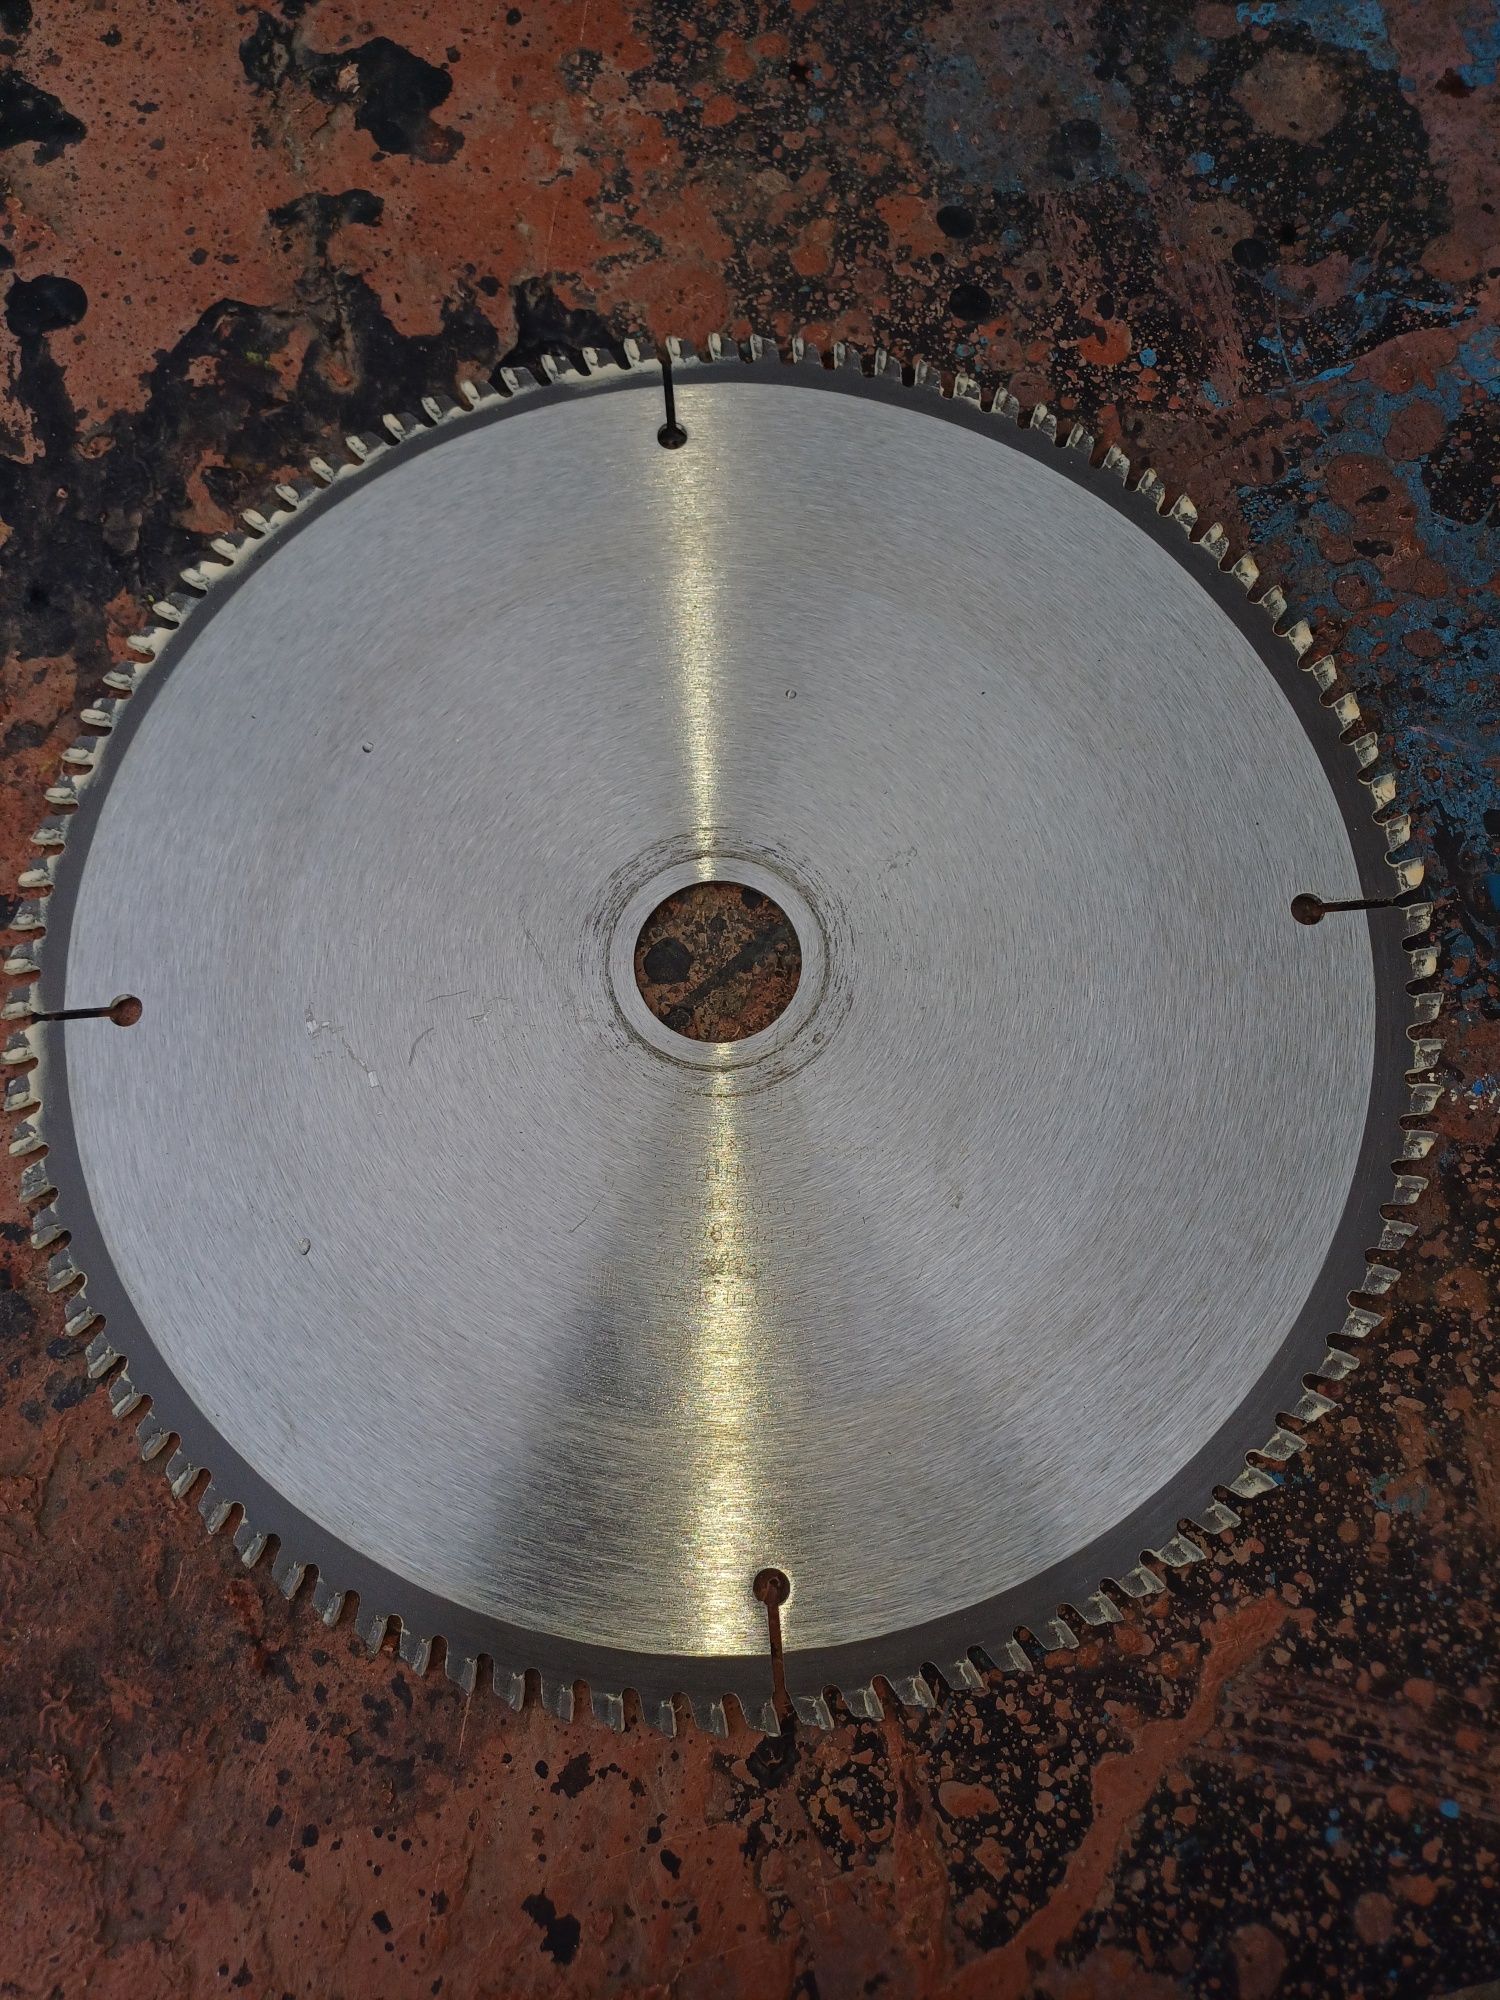 Пильний диск Bosch діаметр 254мм,96 зубів,внутрішній діаметр 30мм